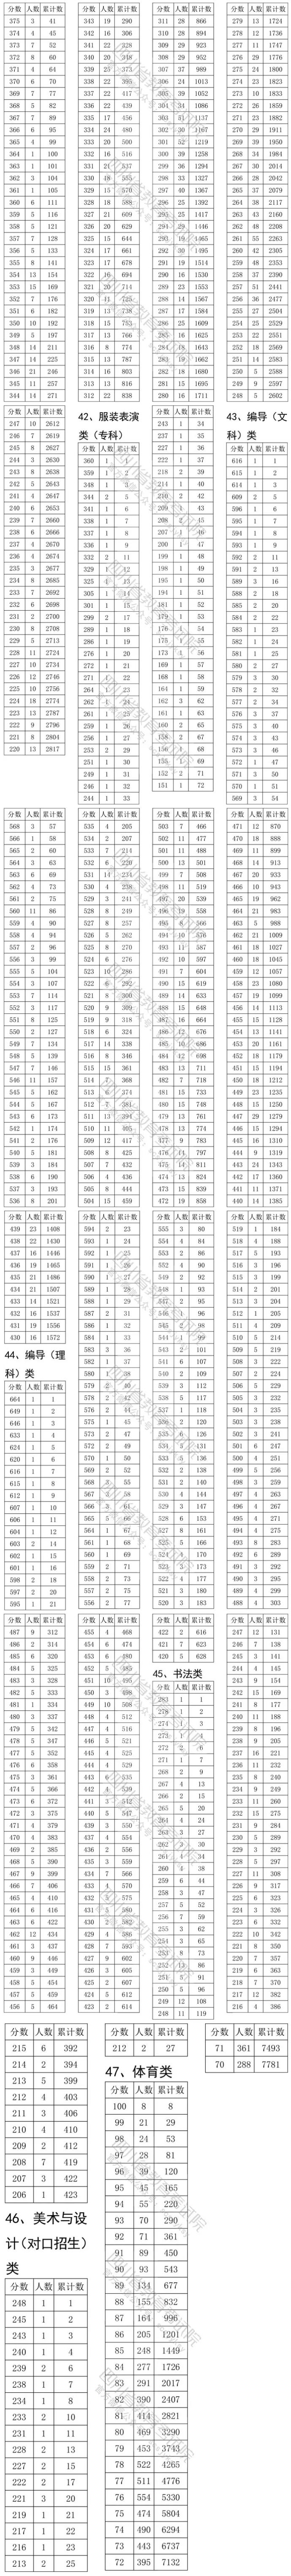 2020四川艺术体育类专业一分一段表